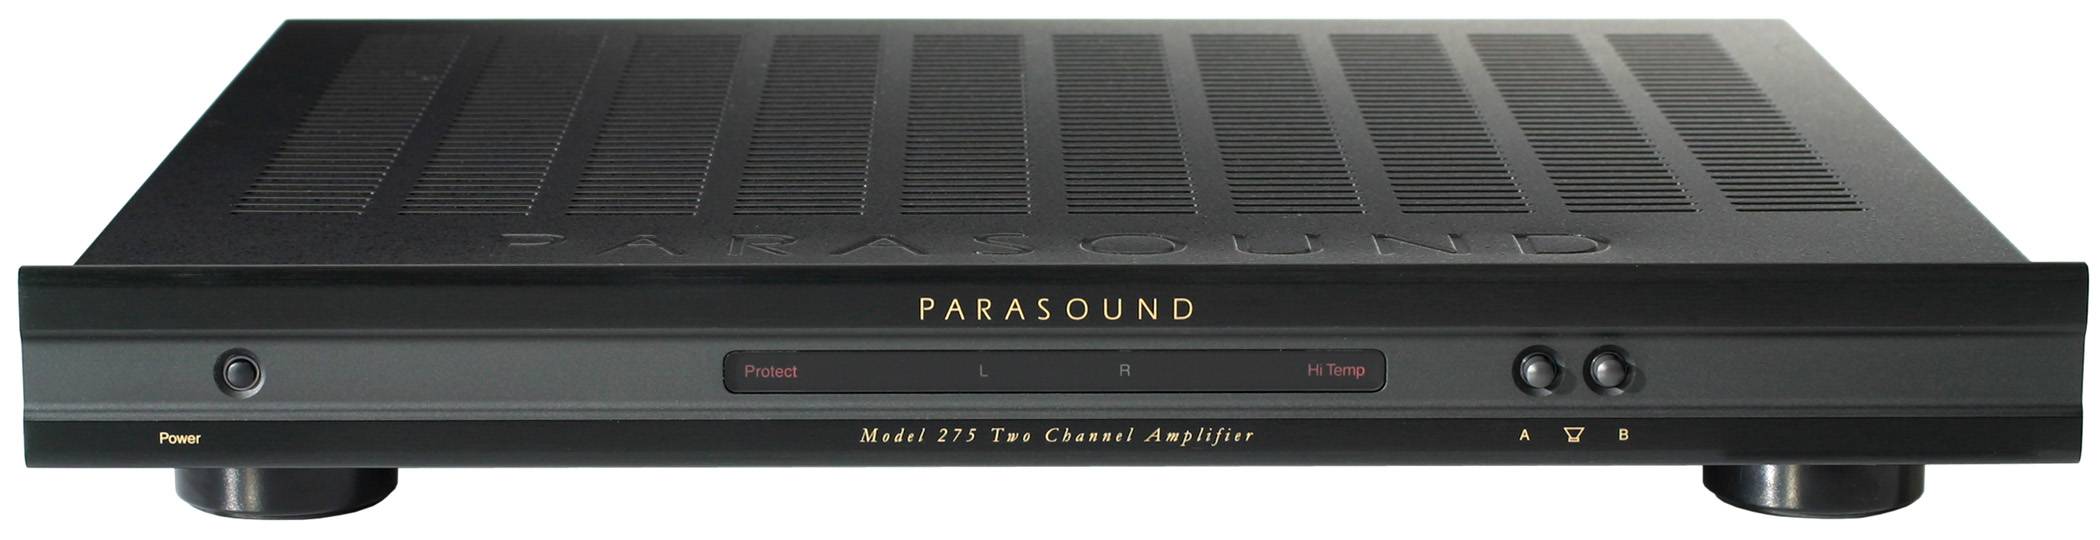 Parasound Model 275